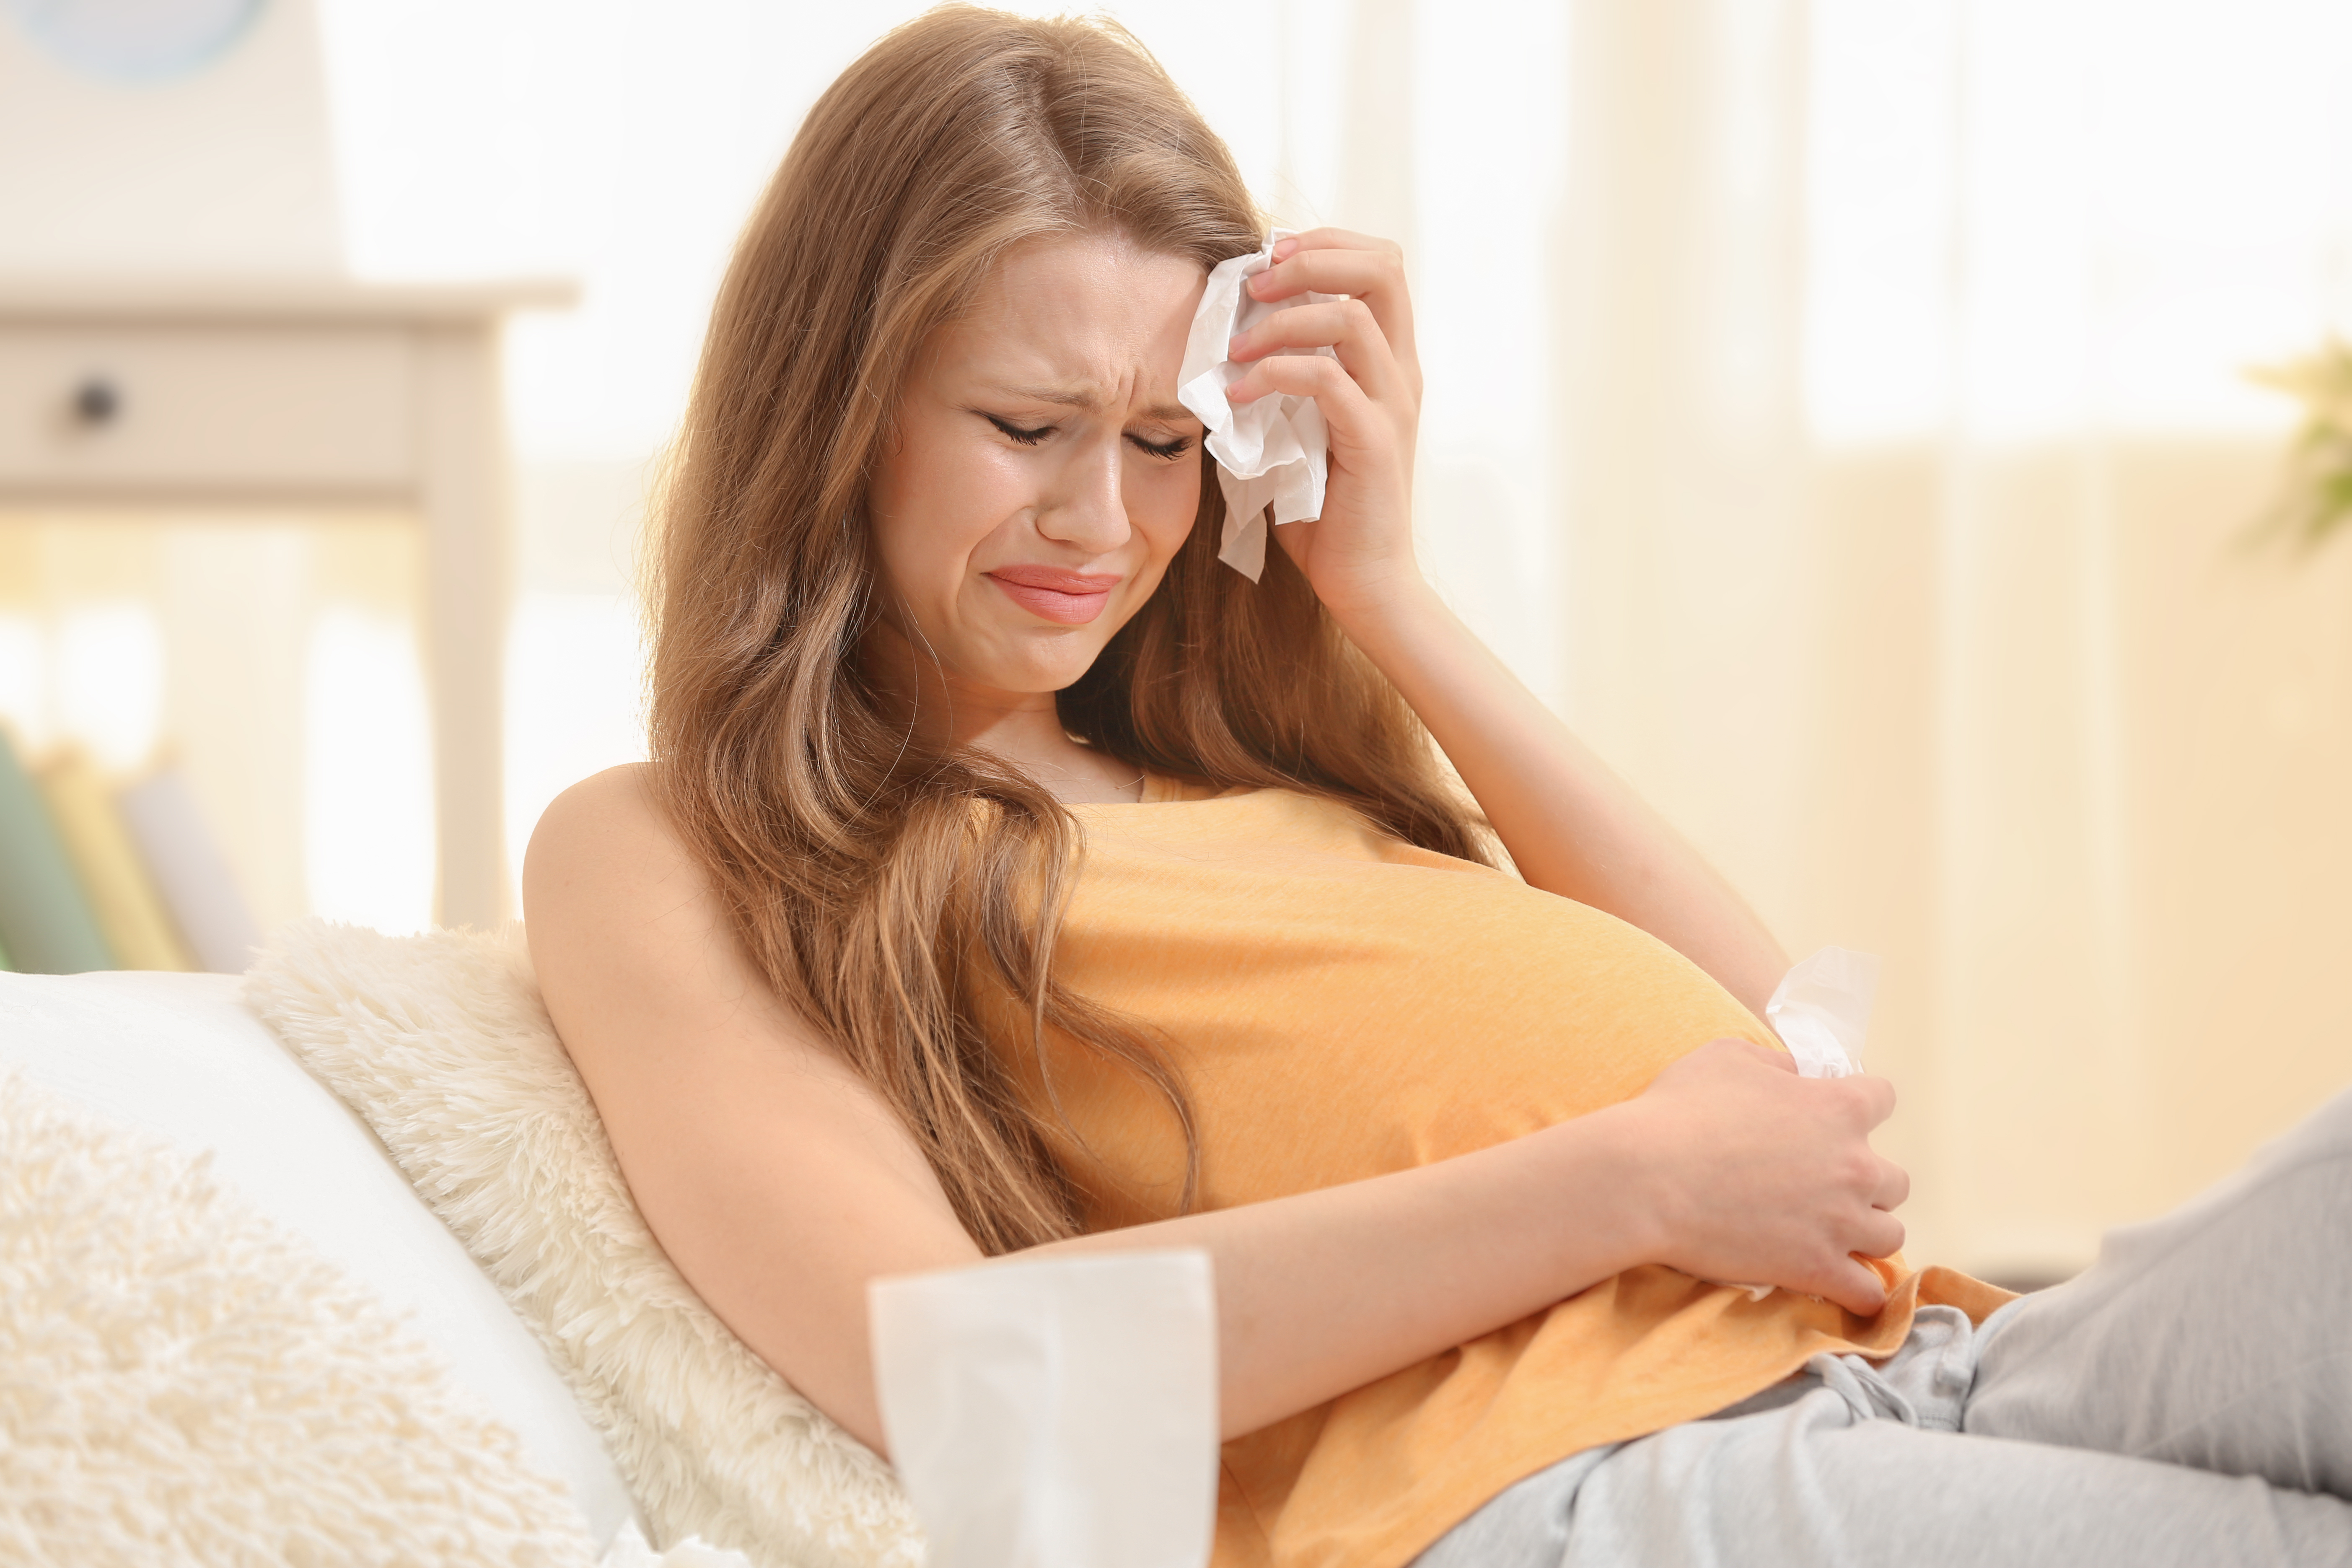 Eine schwangere Frau weint | Quelle: Shutterstock